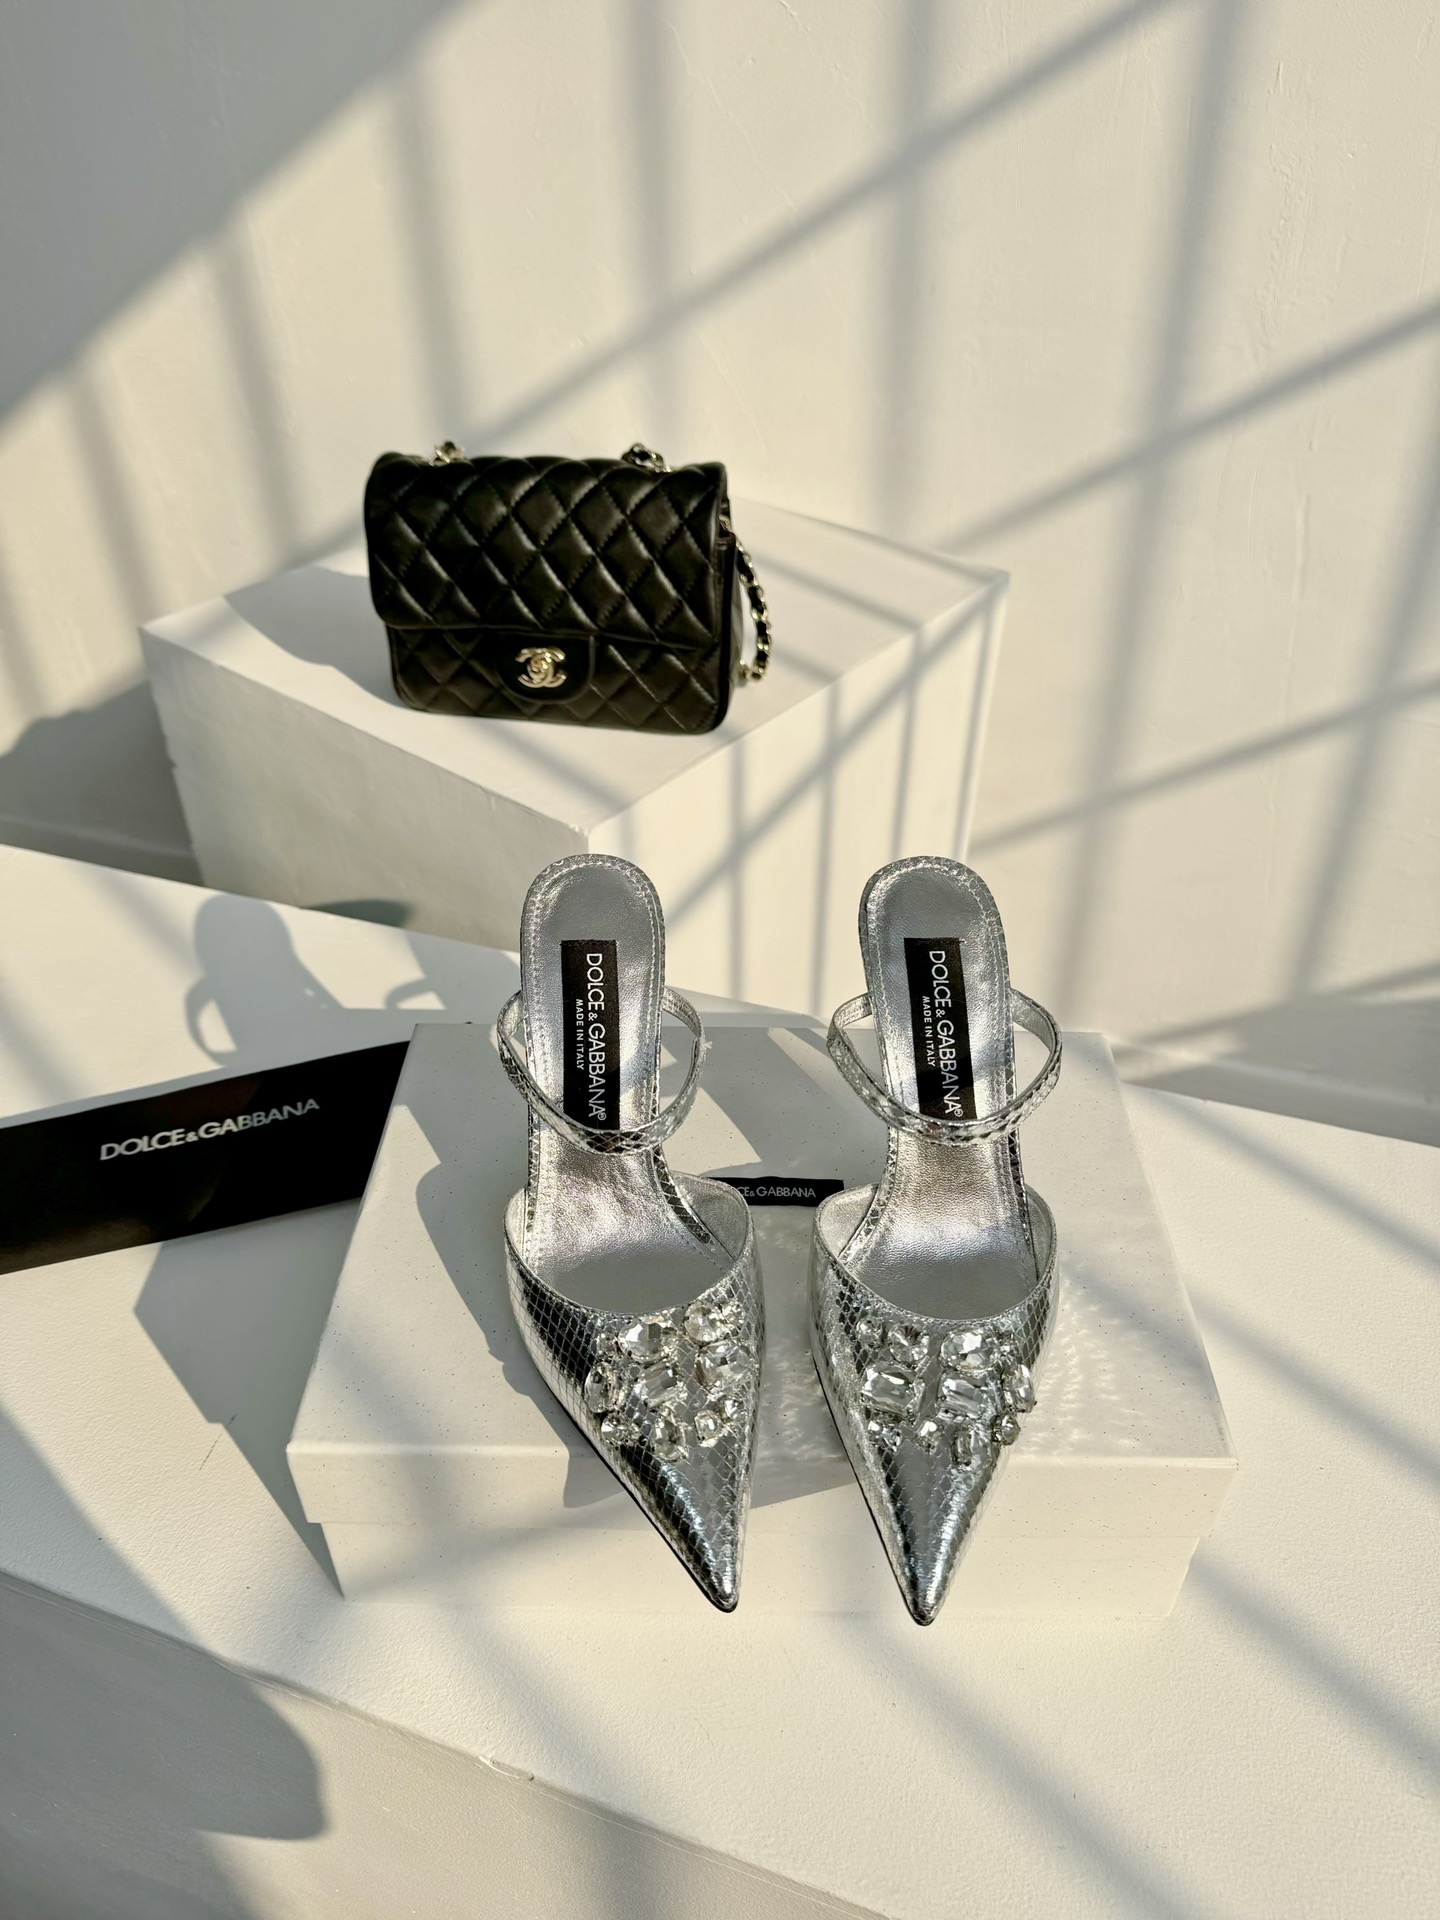 D&G古典与现代碰撞出的意式浪漫美学杜嘉班纳Dolce&Gabbana真丝系列超高跟露趾凉拖线条版型看得